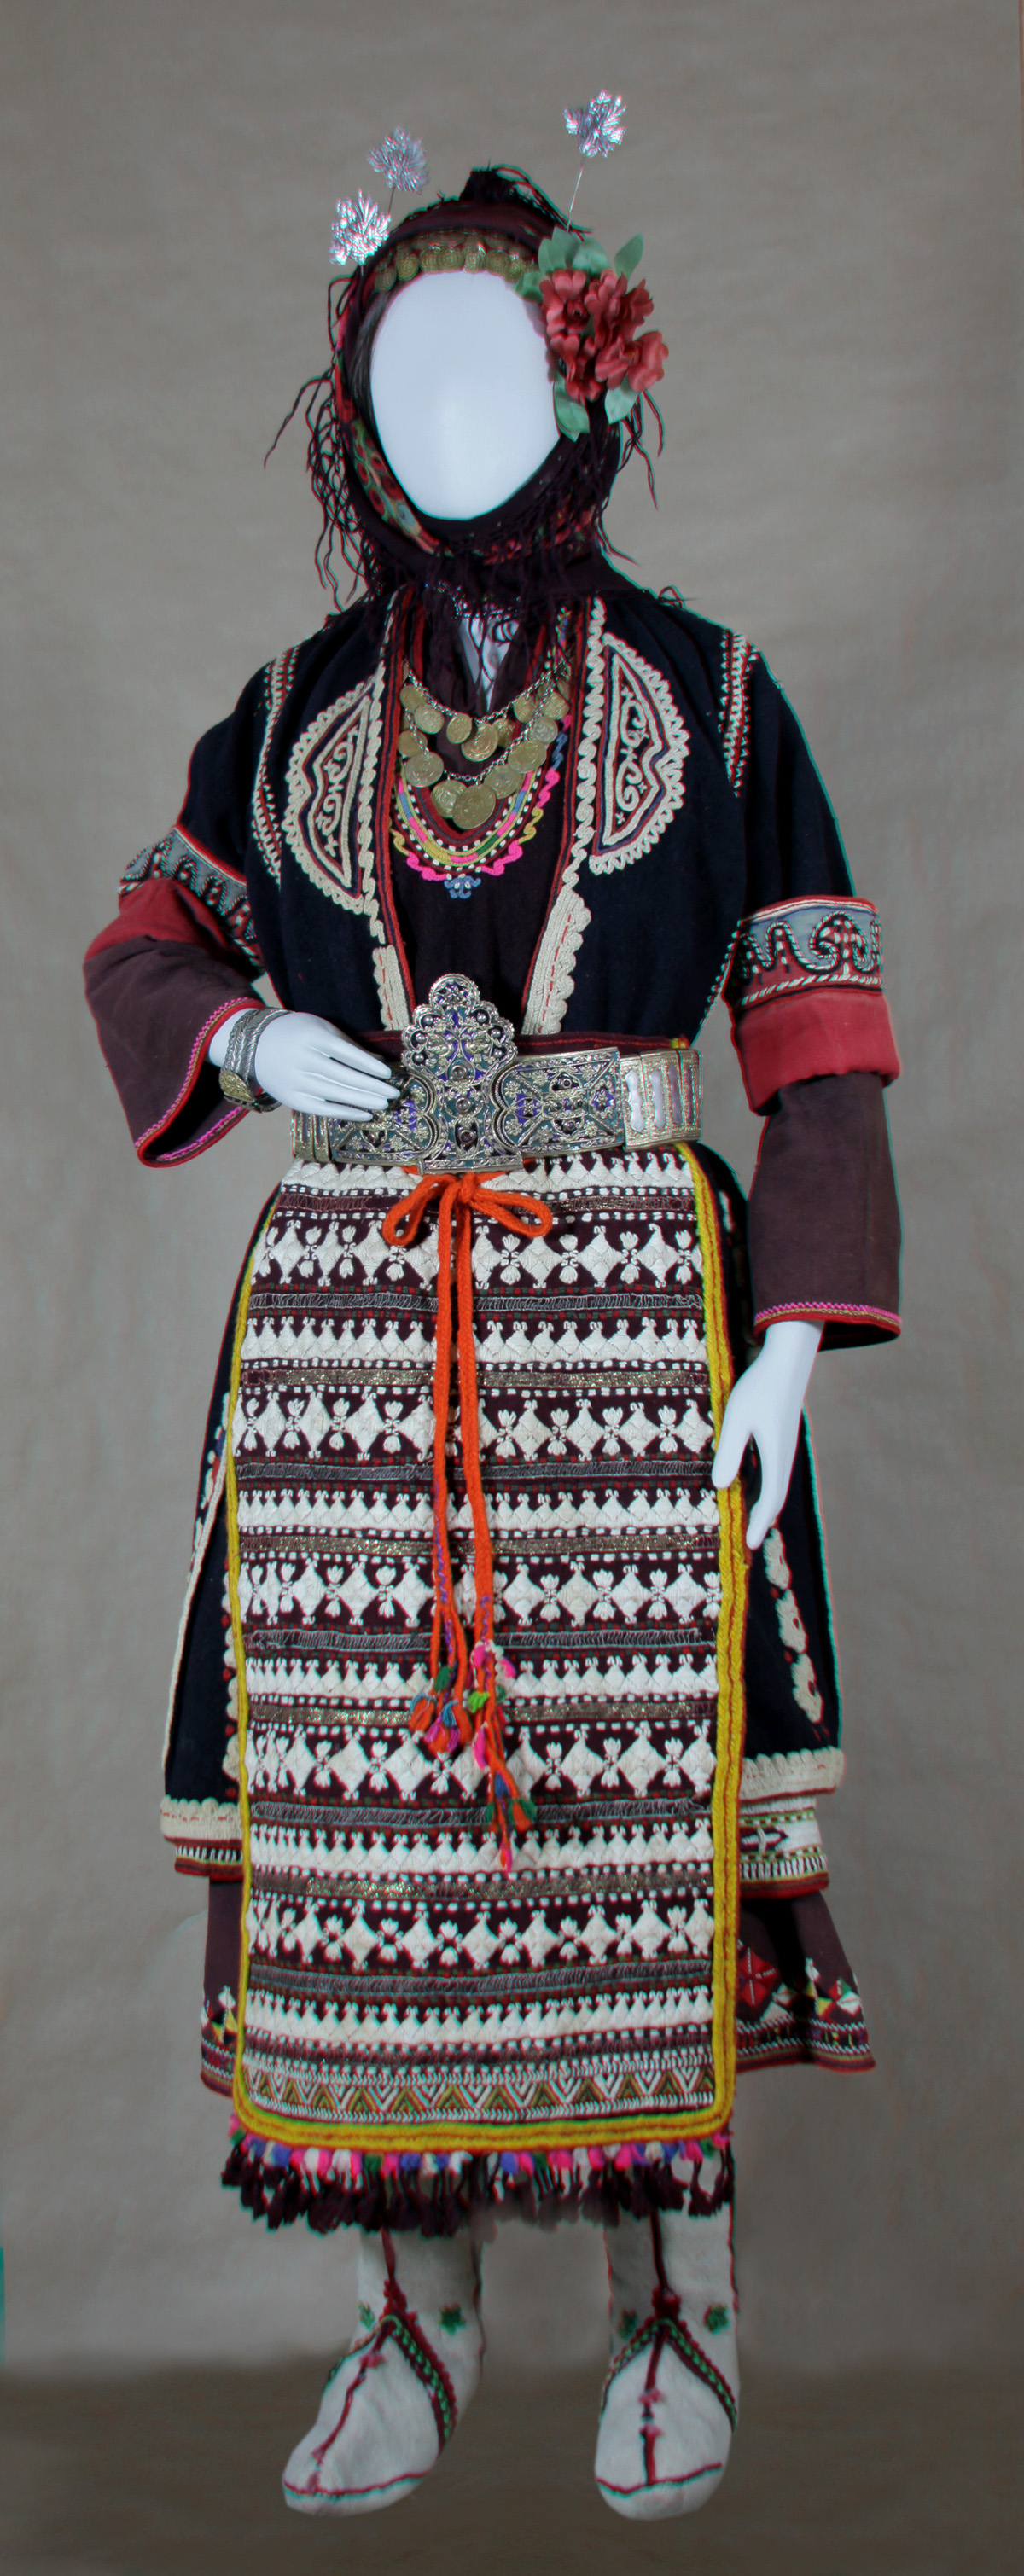 Κούκλα με γυναικεία φορεσιά νιόπαντρης από το Μέγα Ζαλούφι Αν. Θράκης (από την αίθουσα Θράκης-προσφύγων)